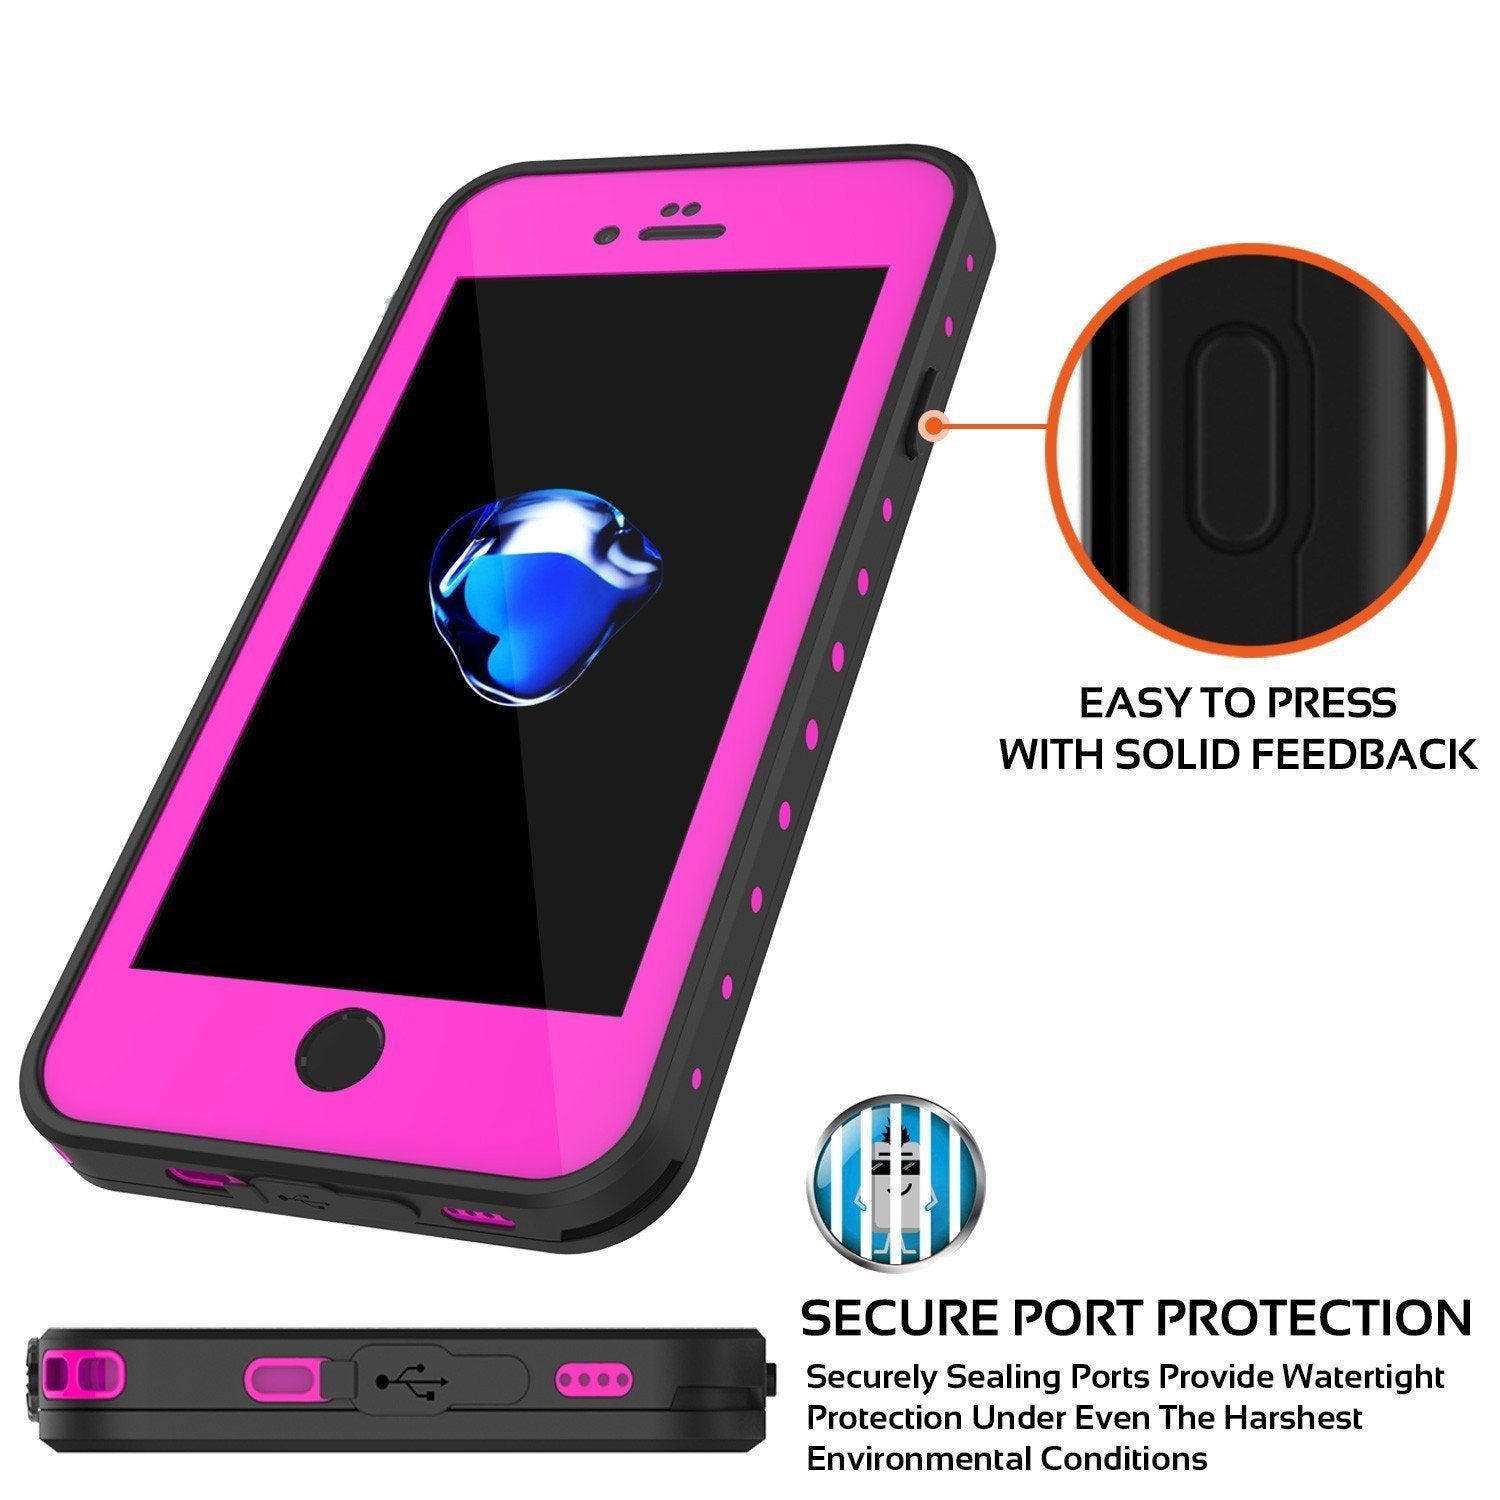 iPhone 8 Waterproof Case, Punkcase [Pink] [StudStar Series] [Slim Fit][IP68 Certified]  [Dirtproof] [Snowproof]